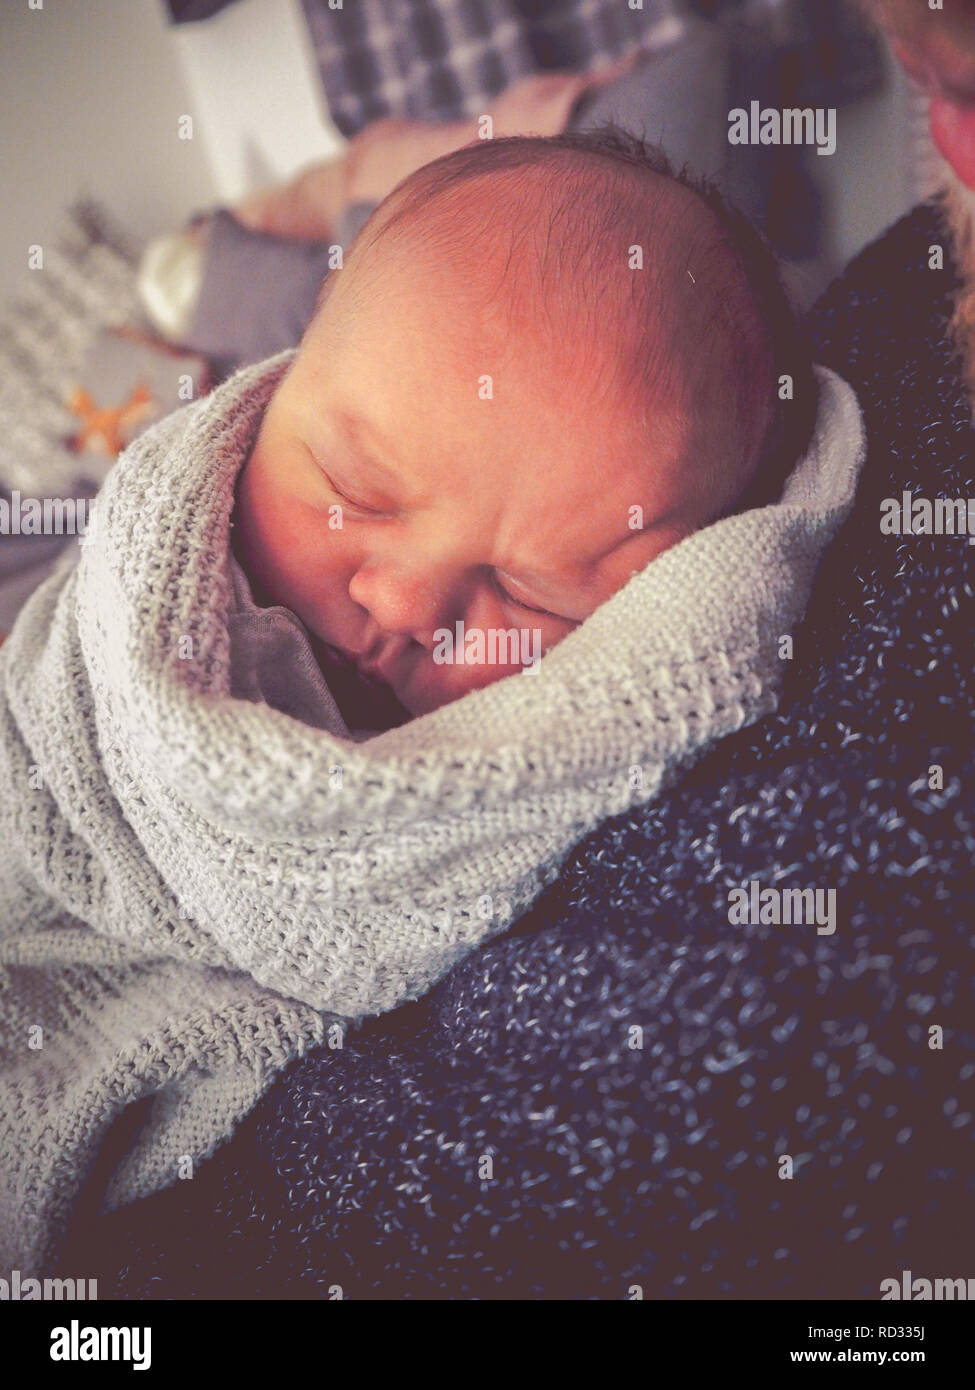 Premature baby cuddling père Banque D'Images